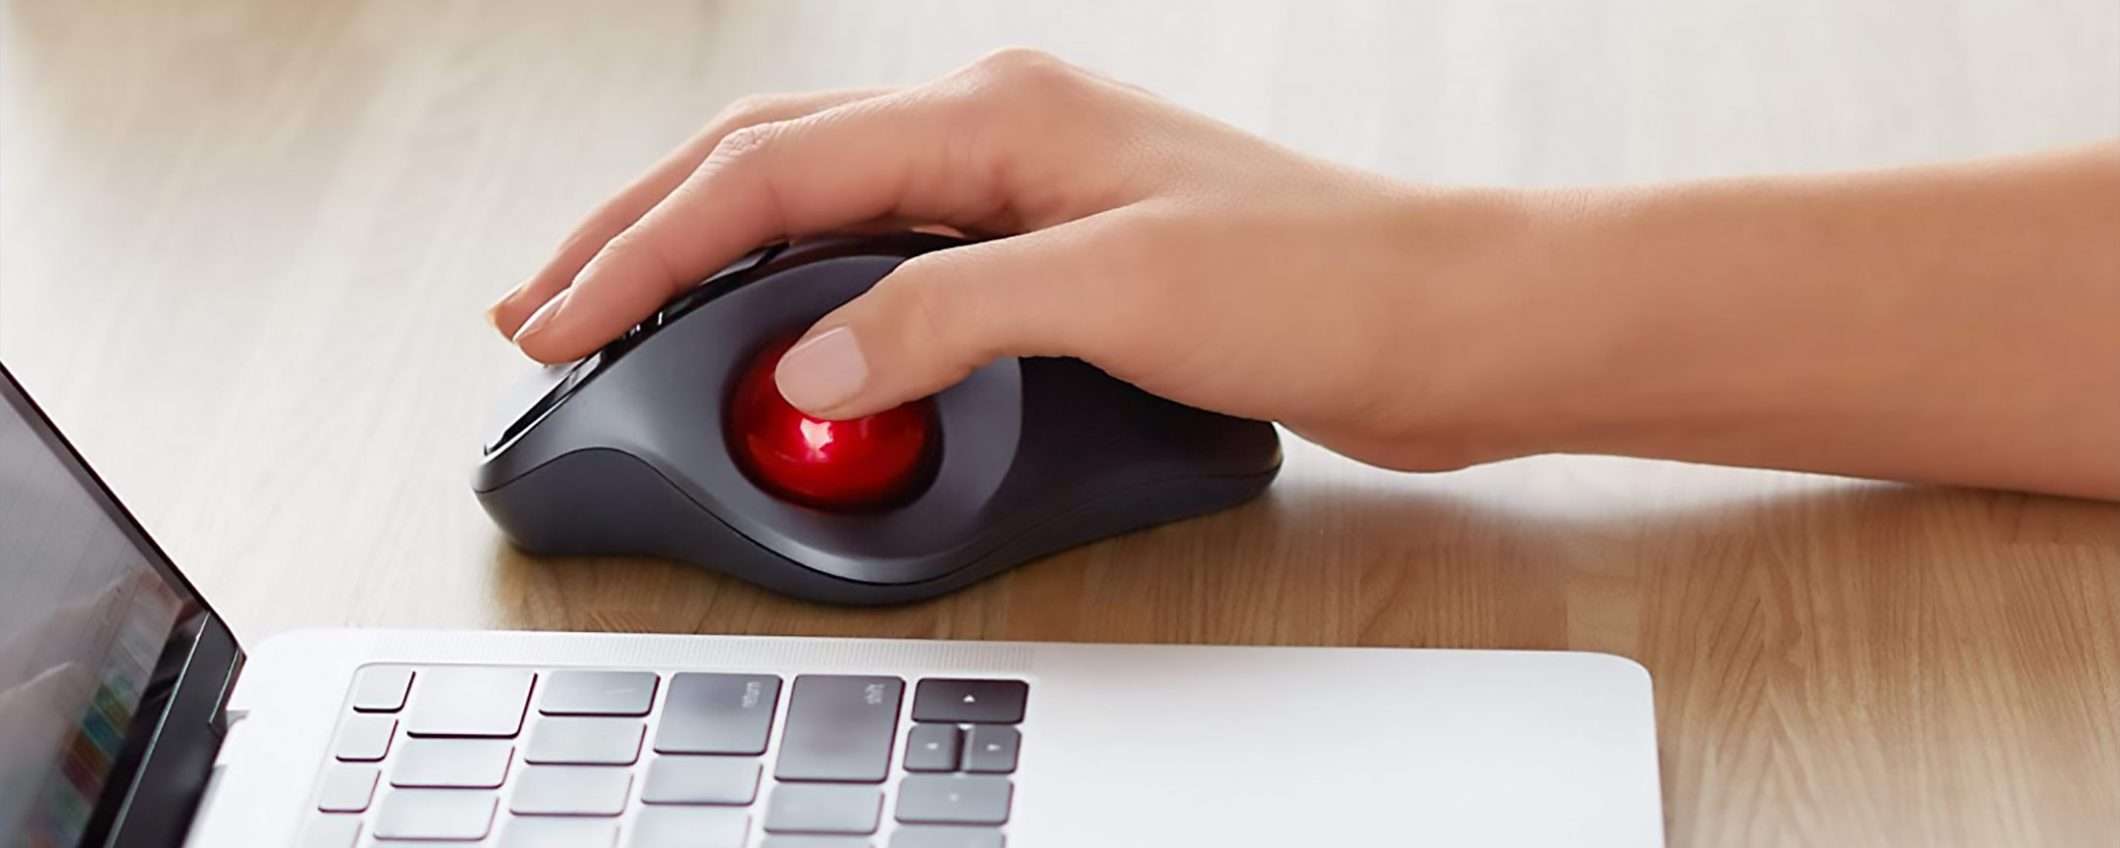 Il mouse con trackball wireless di Amazon